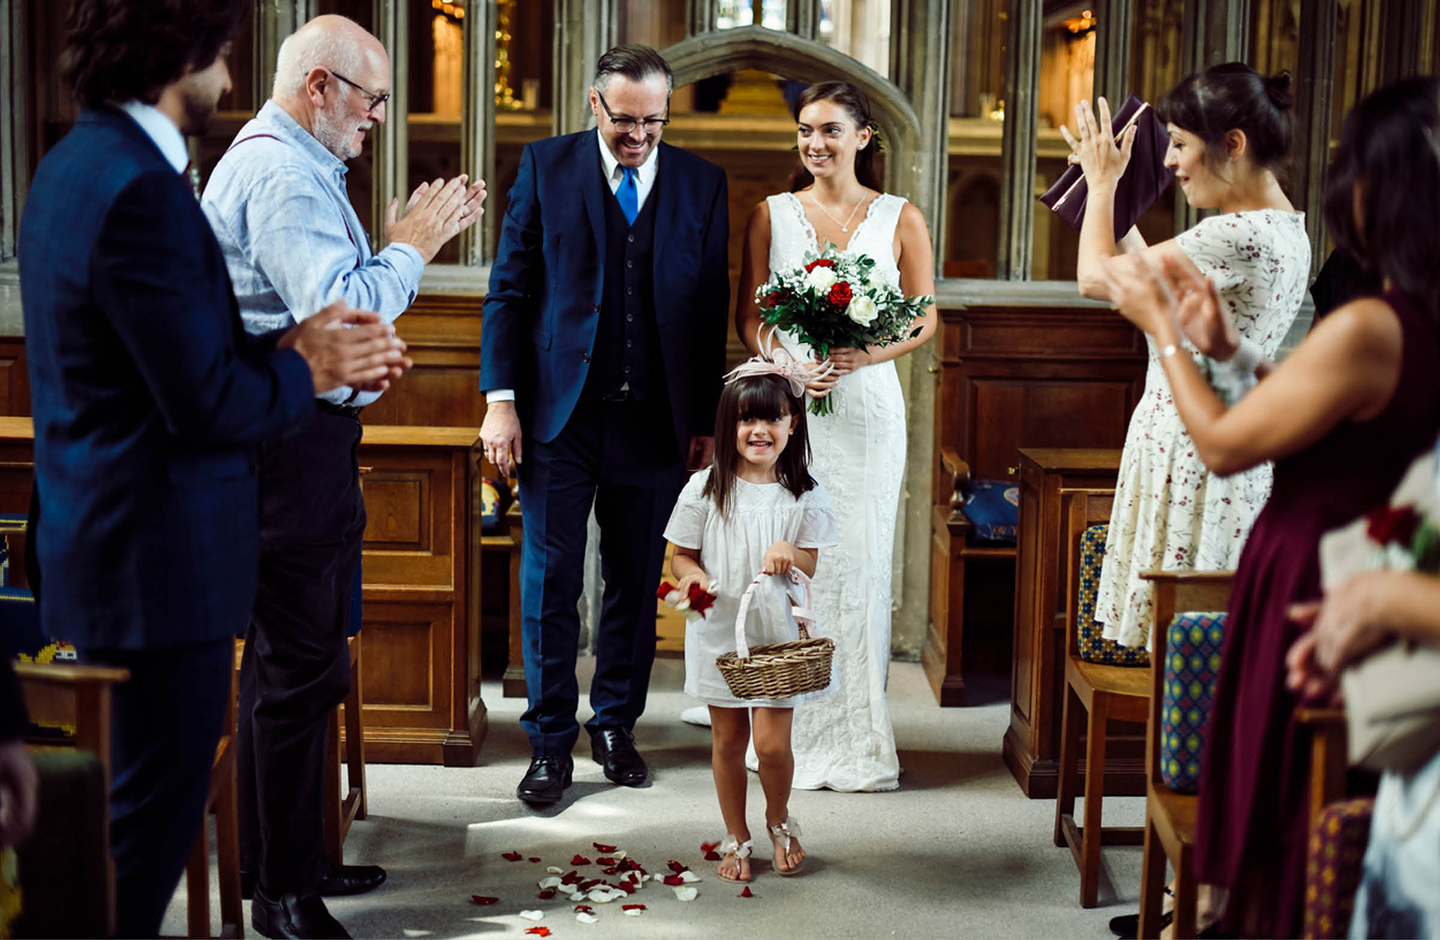 Brautvater führt die Braut durch Mittelgang der Kirche zum Altar. Ein Blumenmädchen streut Blumen und die Gäste haben sich erhoben.